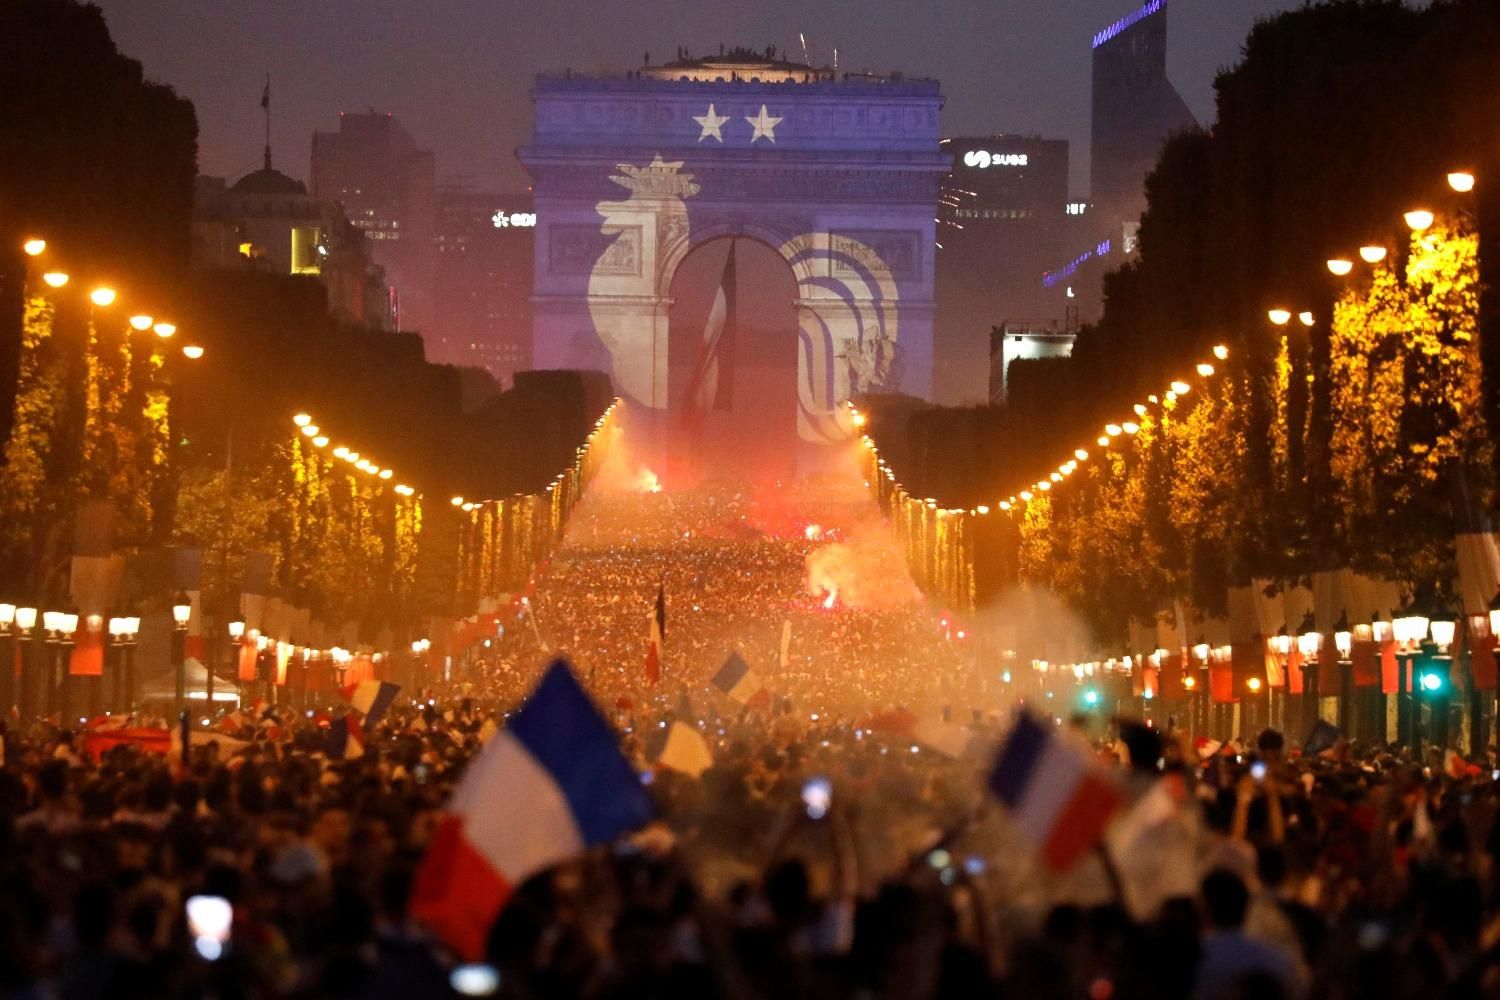 Les supporters français fêtent la victoire des Bleus sur les Champs-Elysées #cm2018